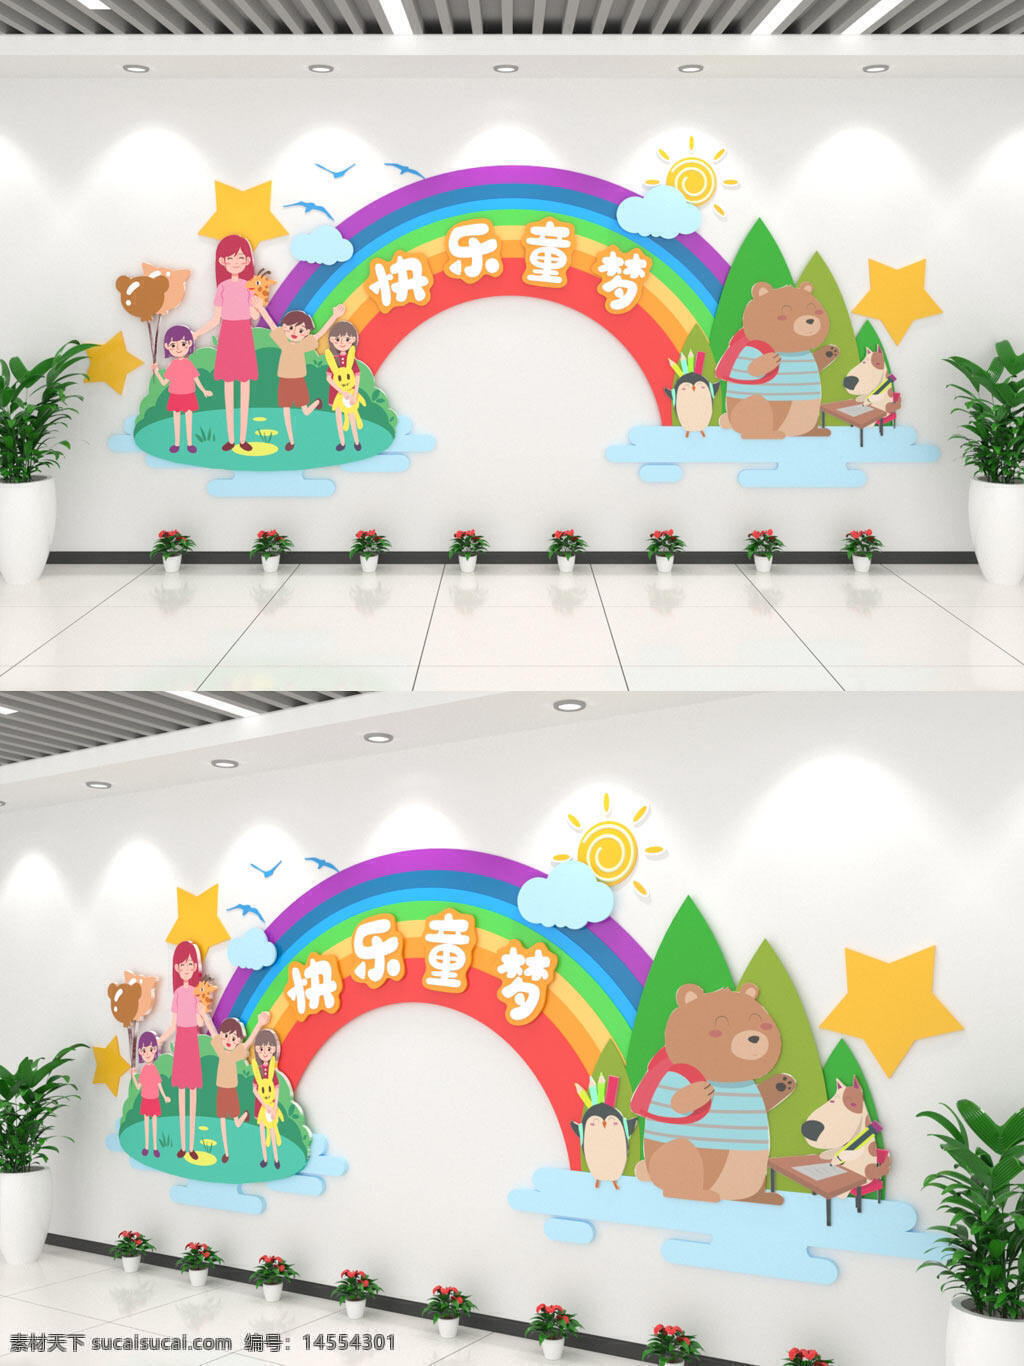 美丽彩虹快乐童梦幼儿园文化墙 美丽彩虹 快乐童梦 幼儿园文化墙